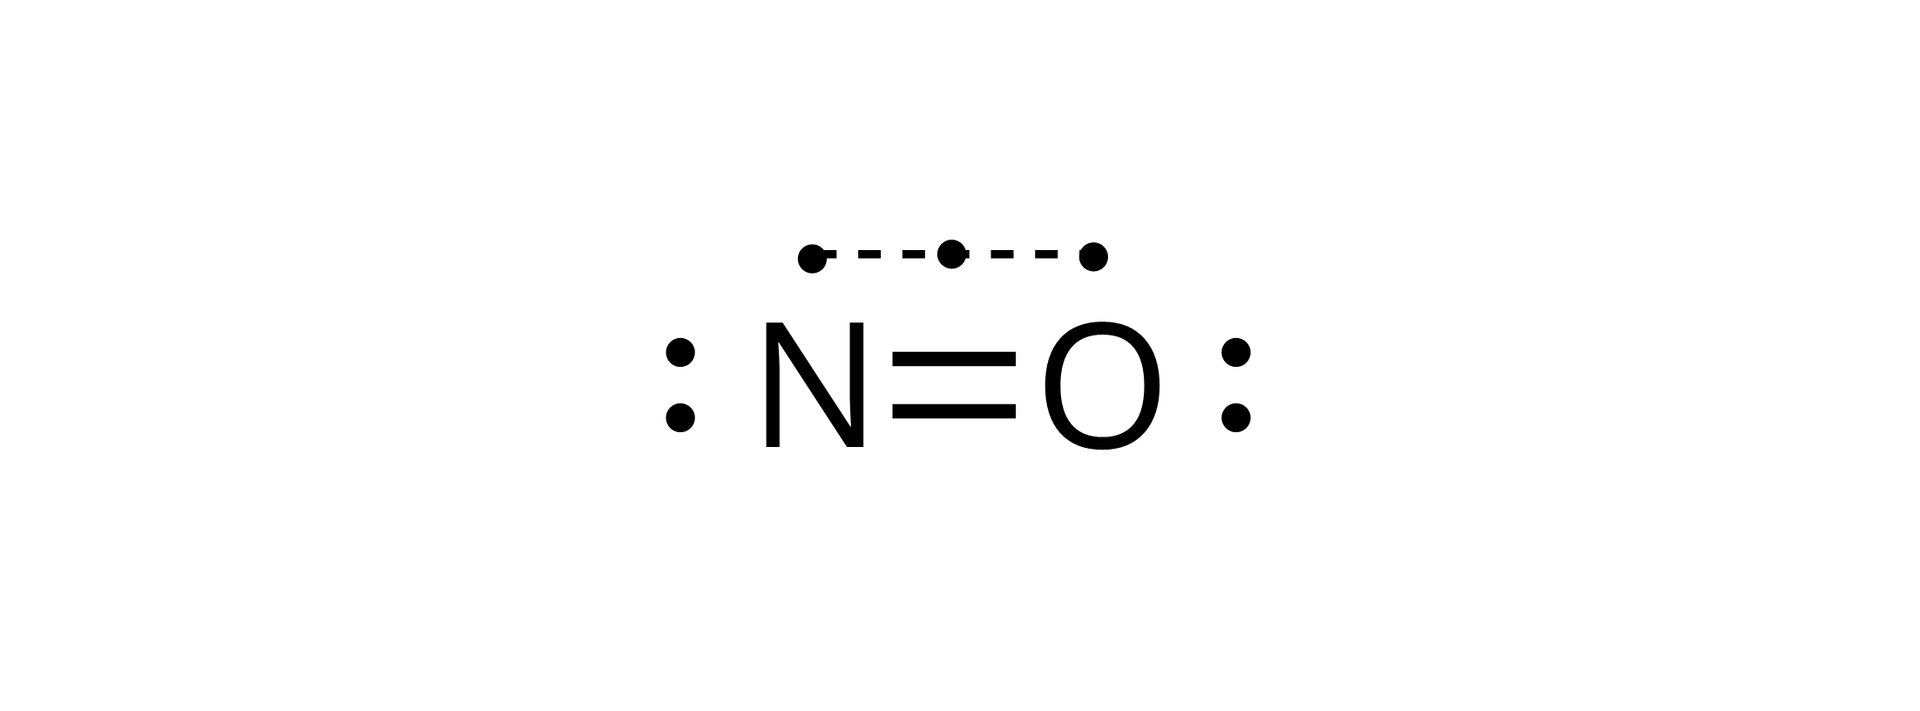 Na ilustracji atom azotu N łączy się wiązaniem podwójnym z atomem tlenu O. NAd tym zapisem są trzy kropki połączone poziomo linią przerywaną. Atom azotu ma po lewej stronie dwie kropki. Atom tlenu ma po prawej stroni dwie kropki. n